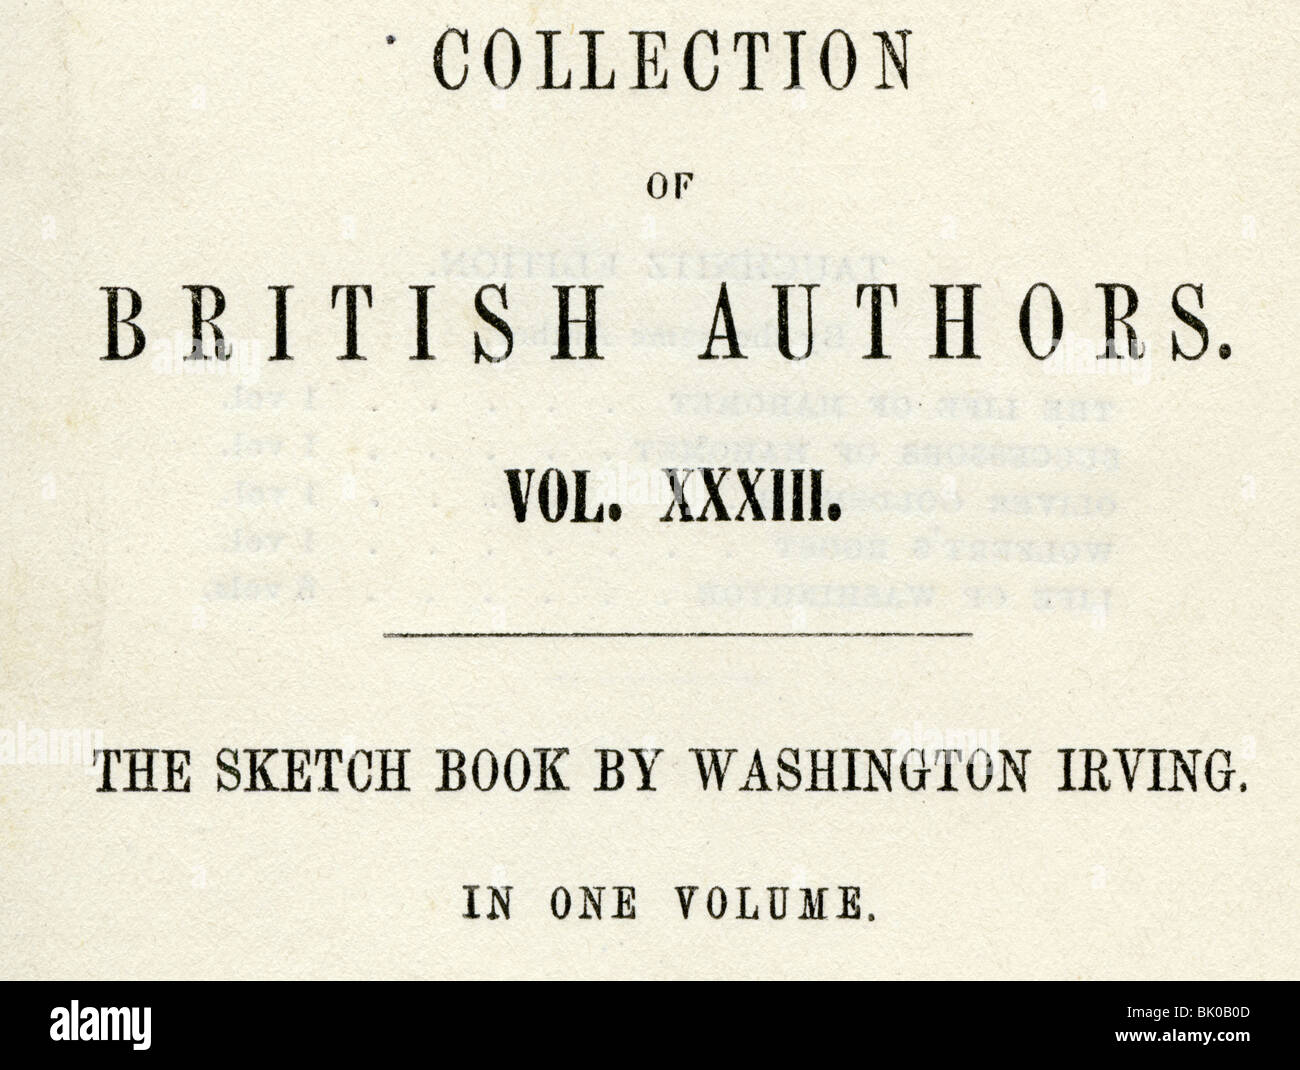 Irving, Washington, 3.4.1783 - 28.11.1859, US-amerikanischer Autor/Schriftsteller, Werke, "The Scetch Book" (180-20), Titel, "Collection of British Authors", Vol. XXXIII, Stockfoto